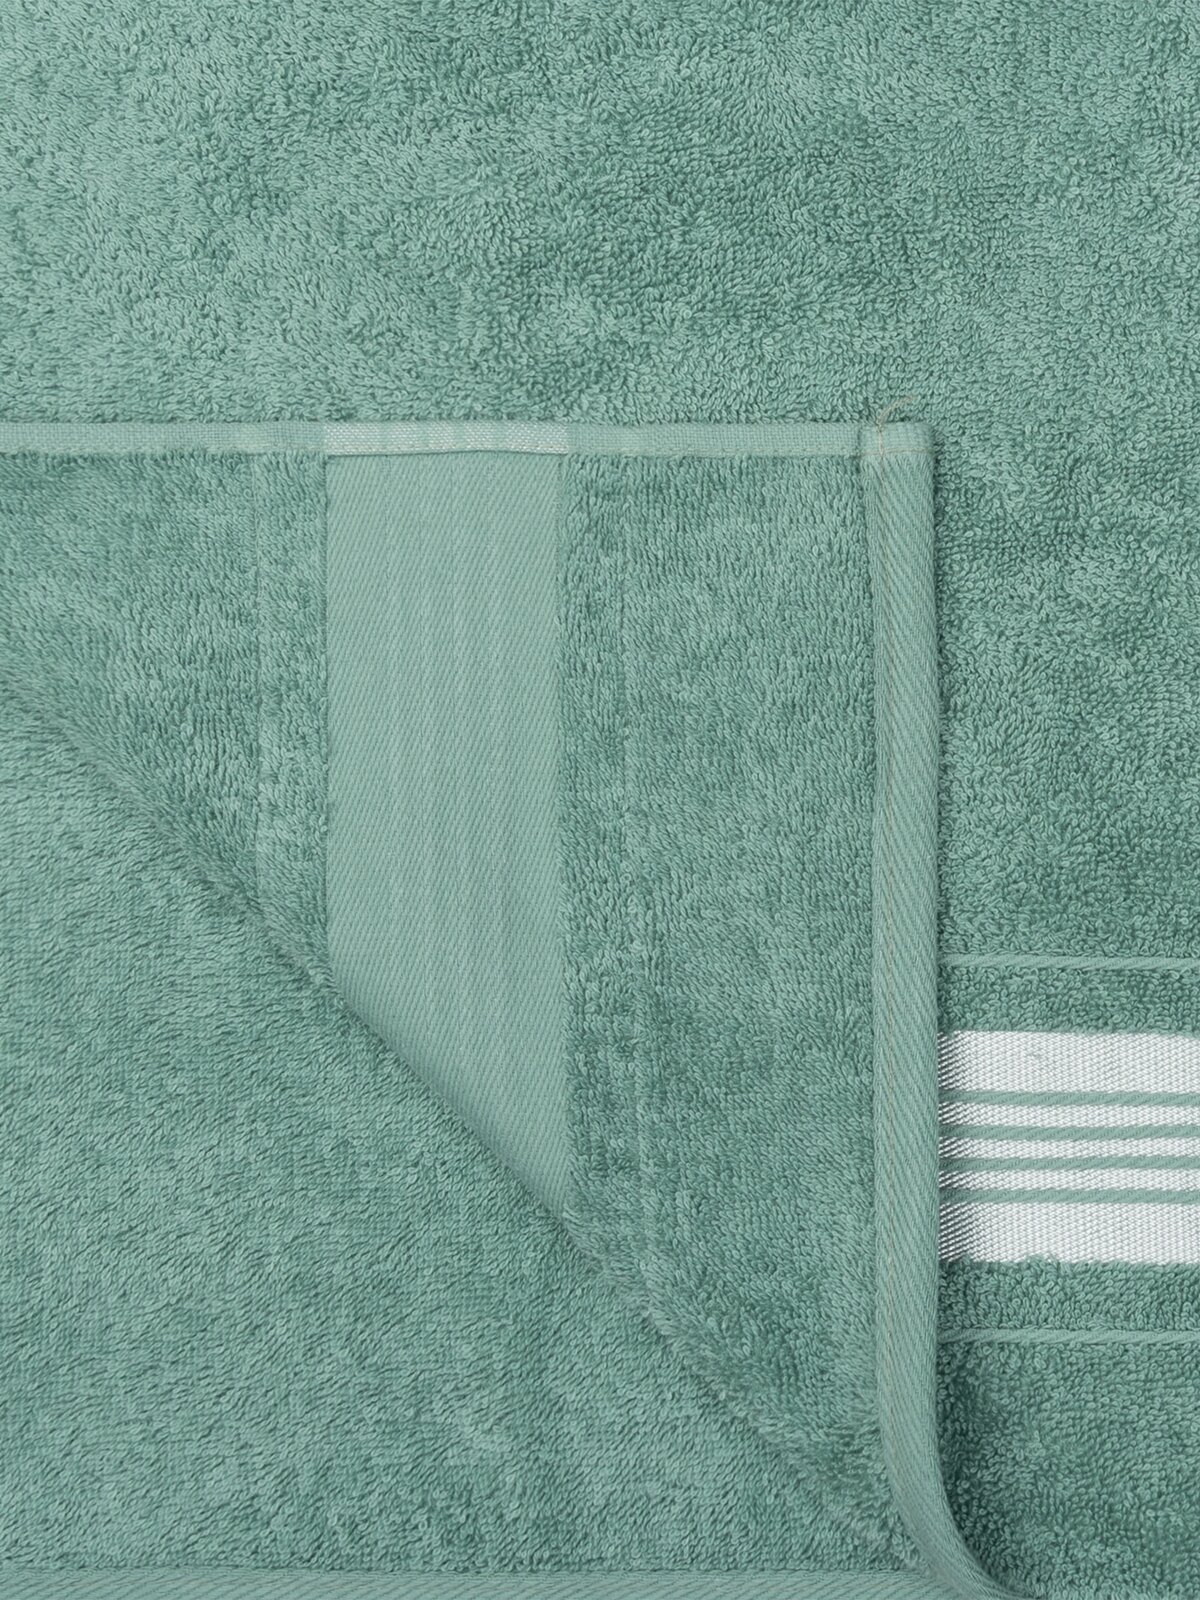 Полотенце банное махровое, Донецкая мануфактура,Ice shine, 70Х130 см, цвет: зеленый, 100% хлопок - фотография № 3